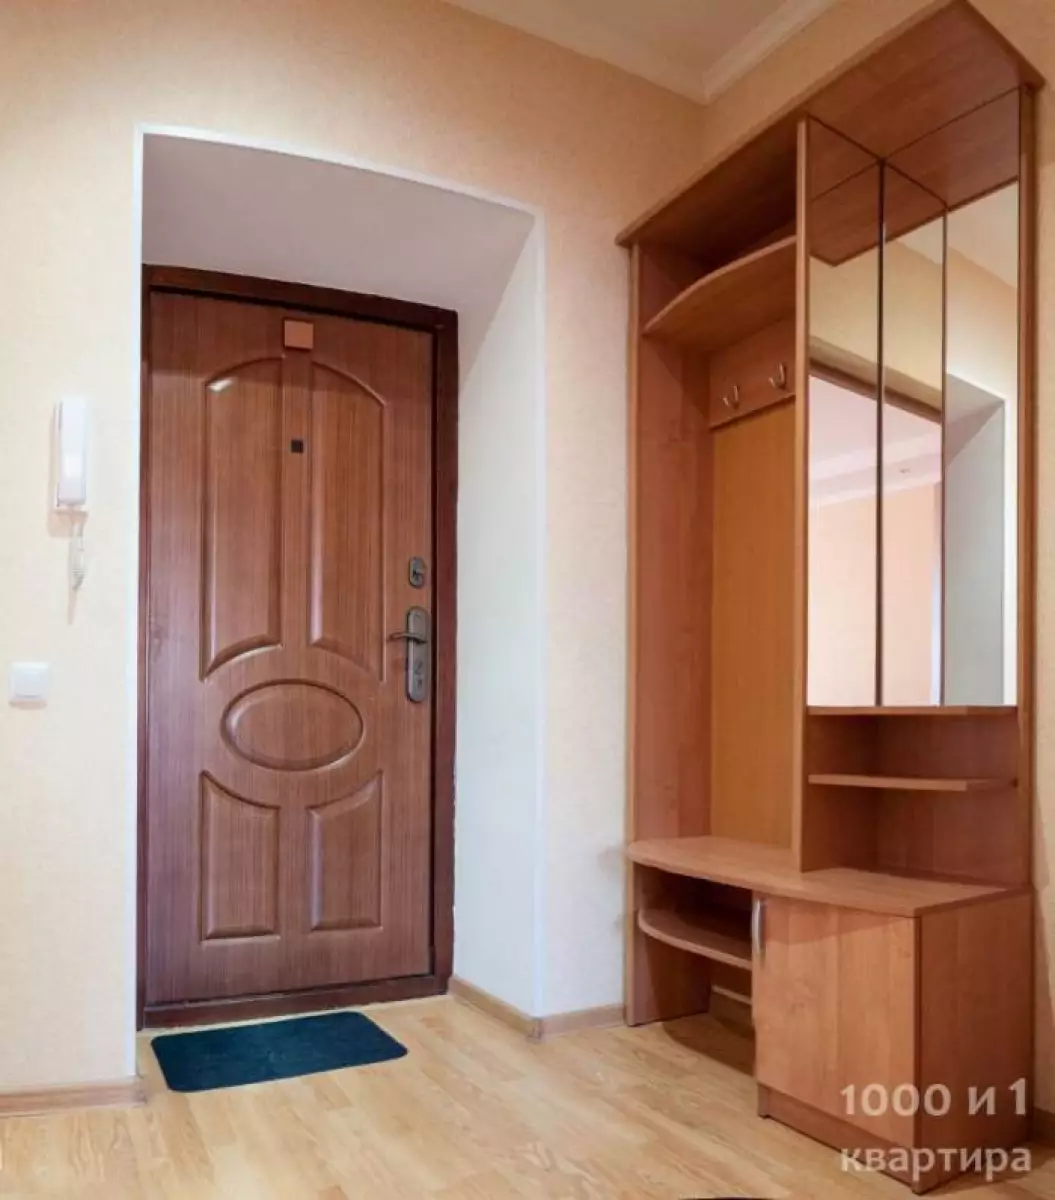 Вариант #12897 для аренды посуточно в Самаре Мечникова, д.50А на 4 гостей - фото 9